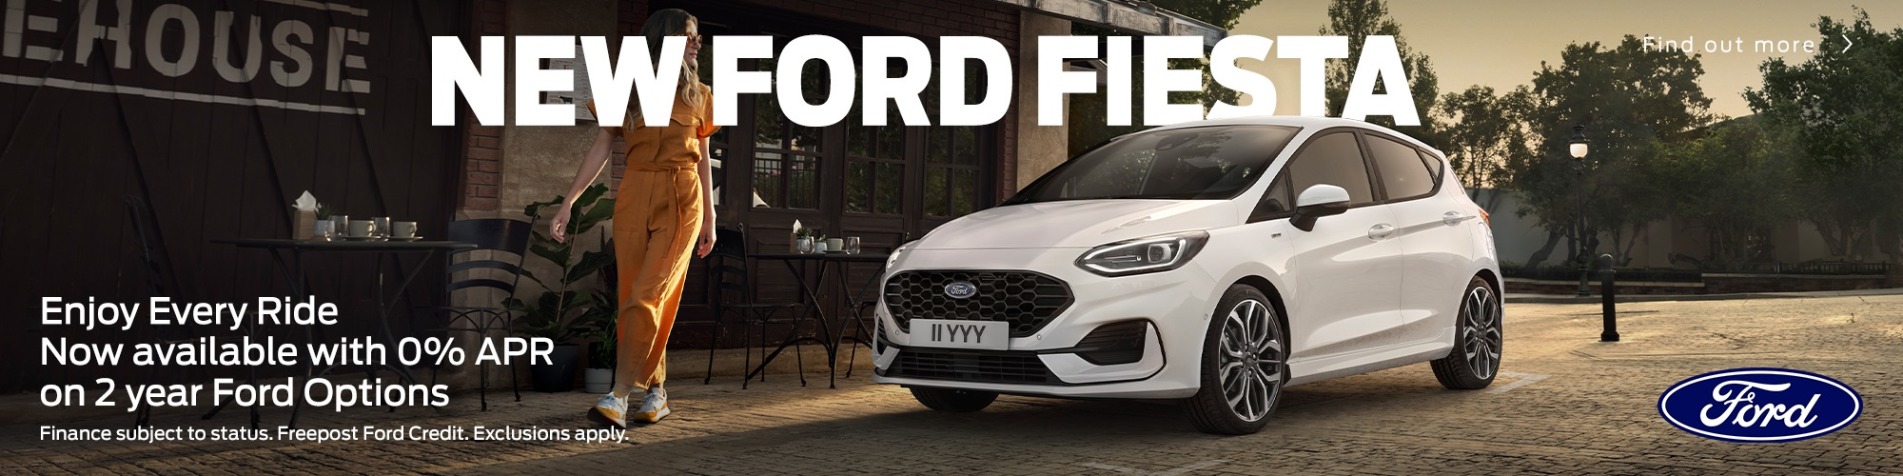 New Ford Fiesta 0% APR